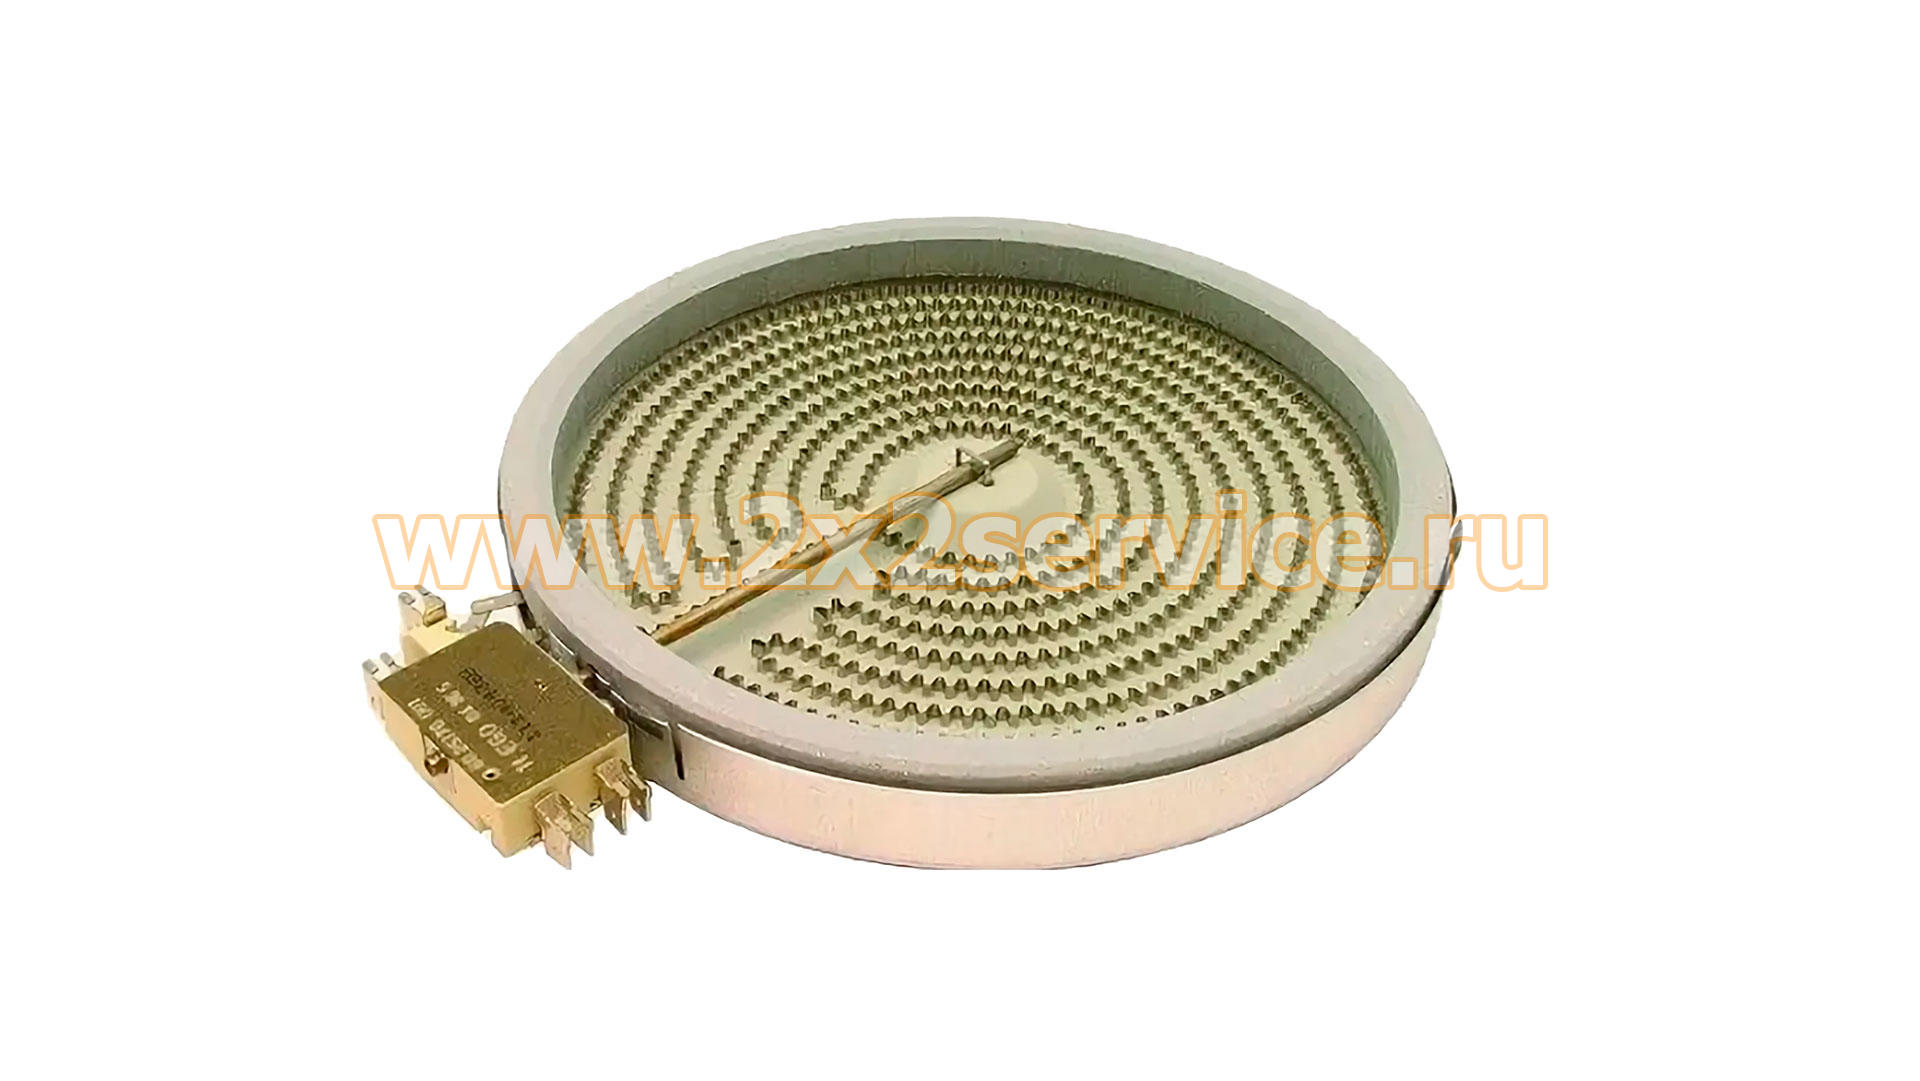 Конфорка 200mm 1800W стеклокерамической поверхности Whirlpool (C00139036)